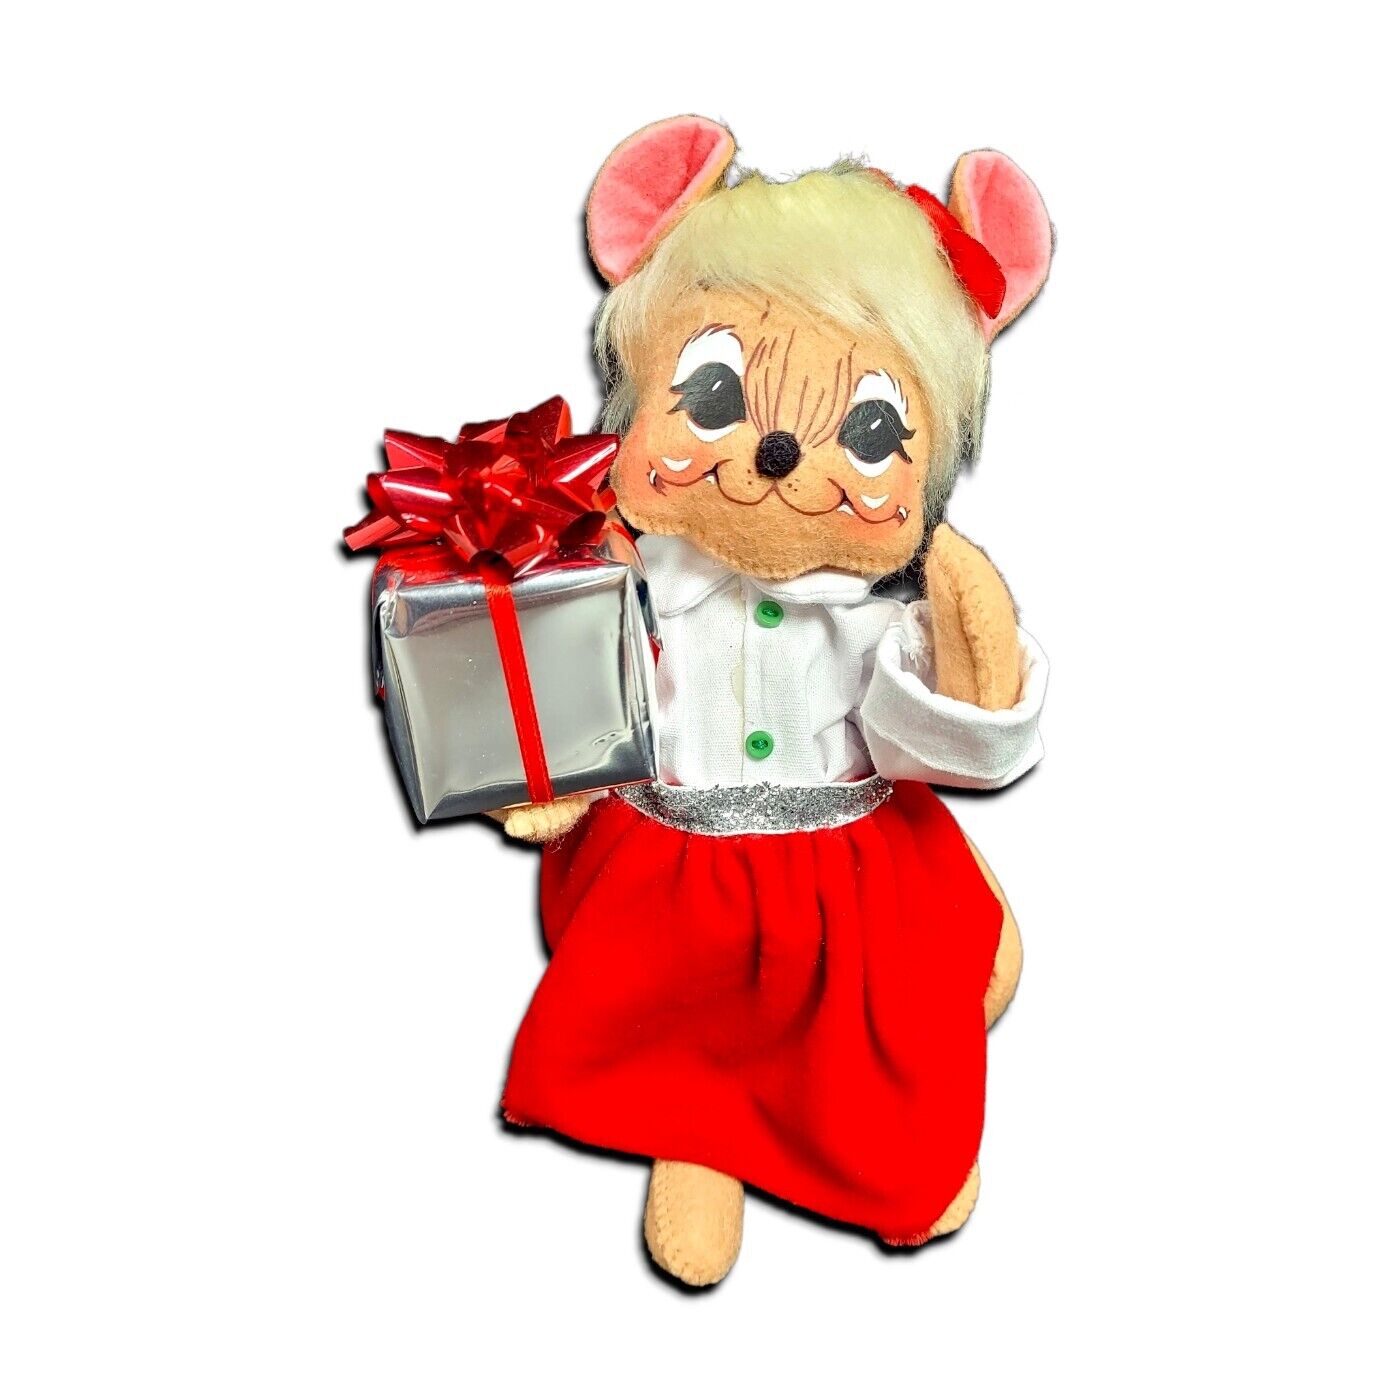 Annalee Silver Sparkle Girl Mouse 8 In Doll 2013 Christmas Gift Red Velvet Skirt